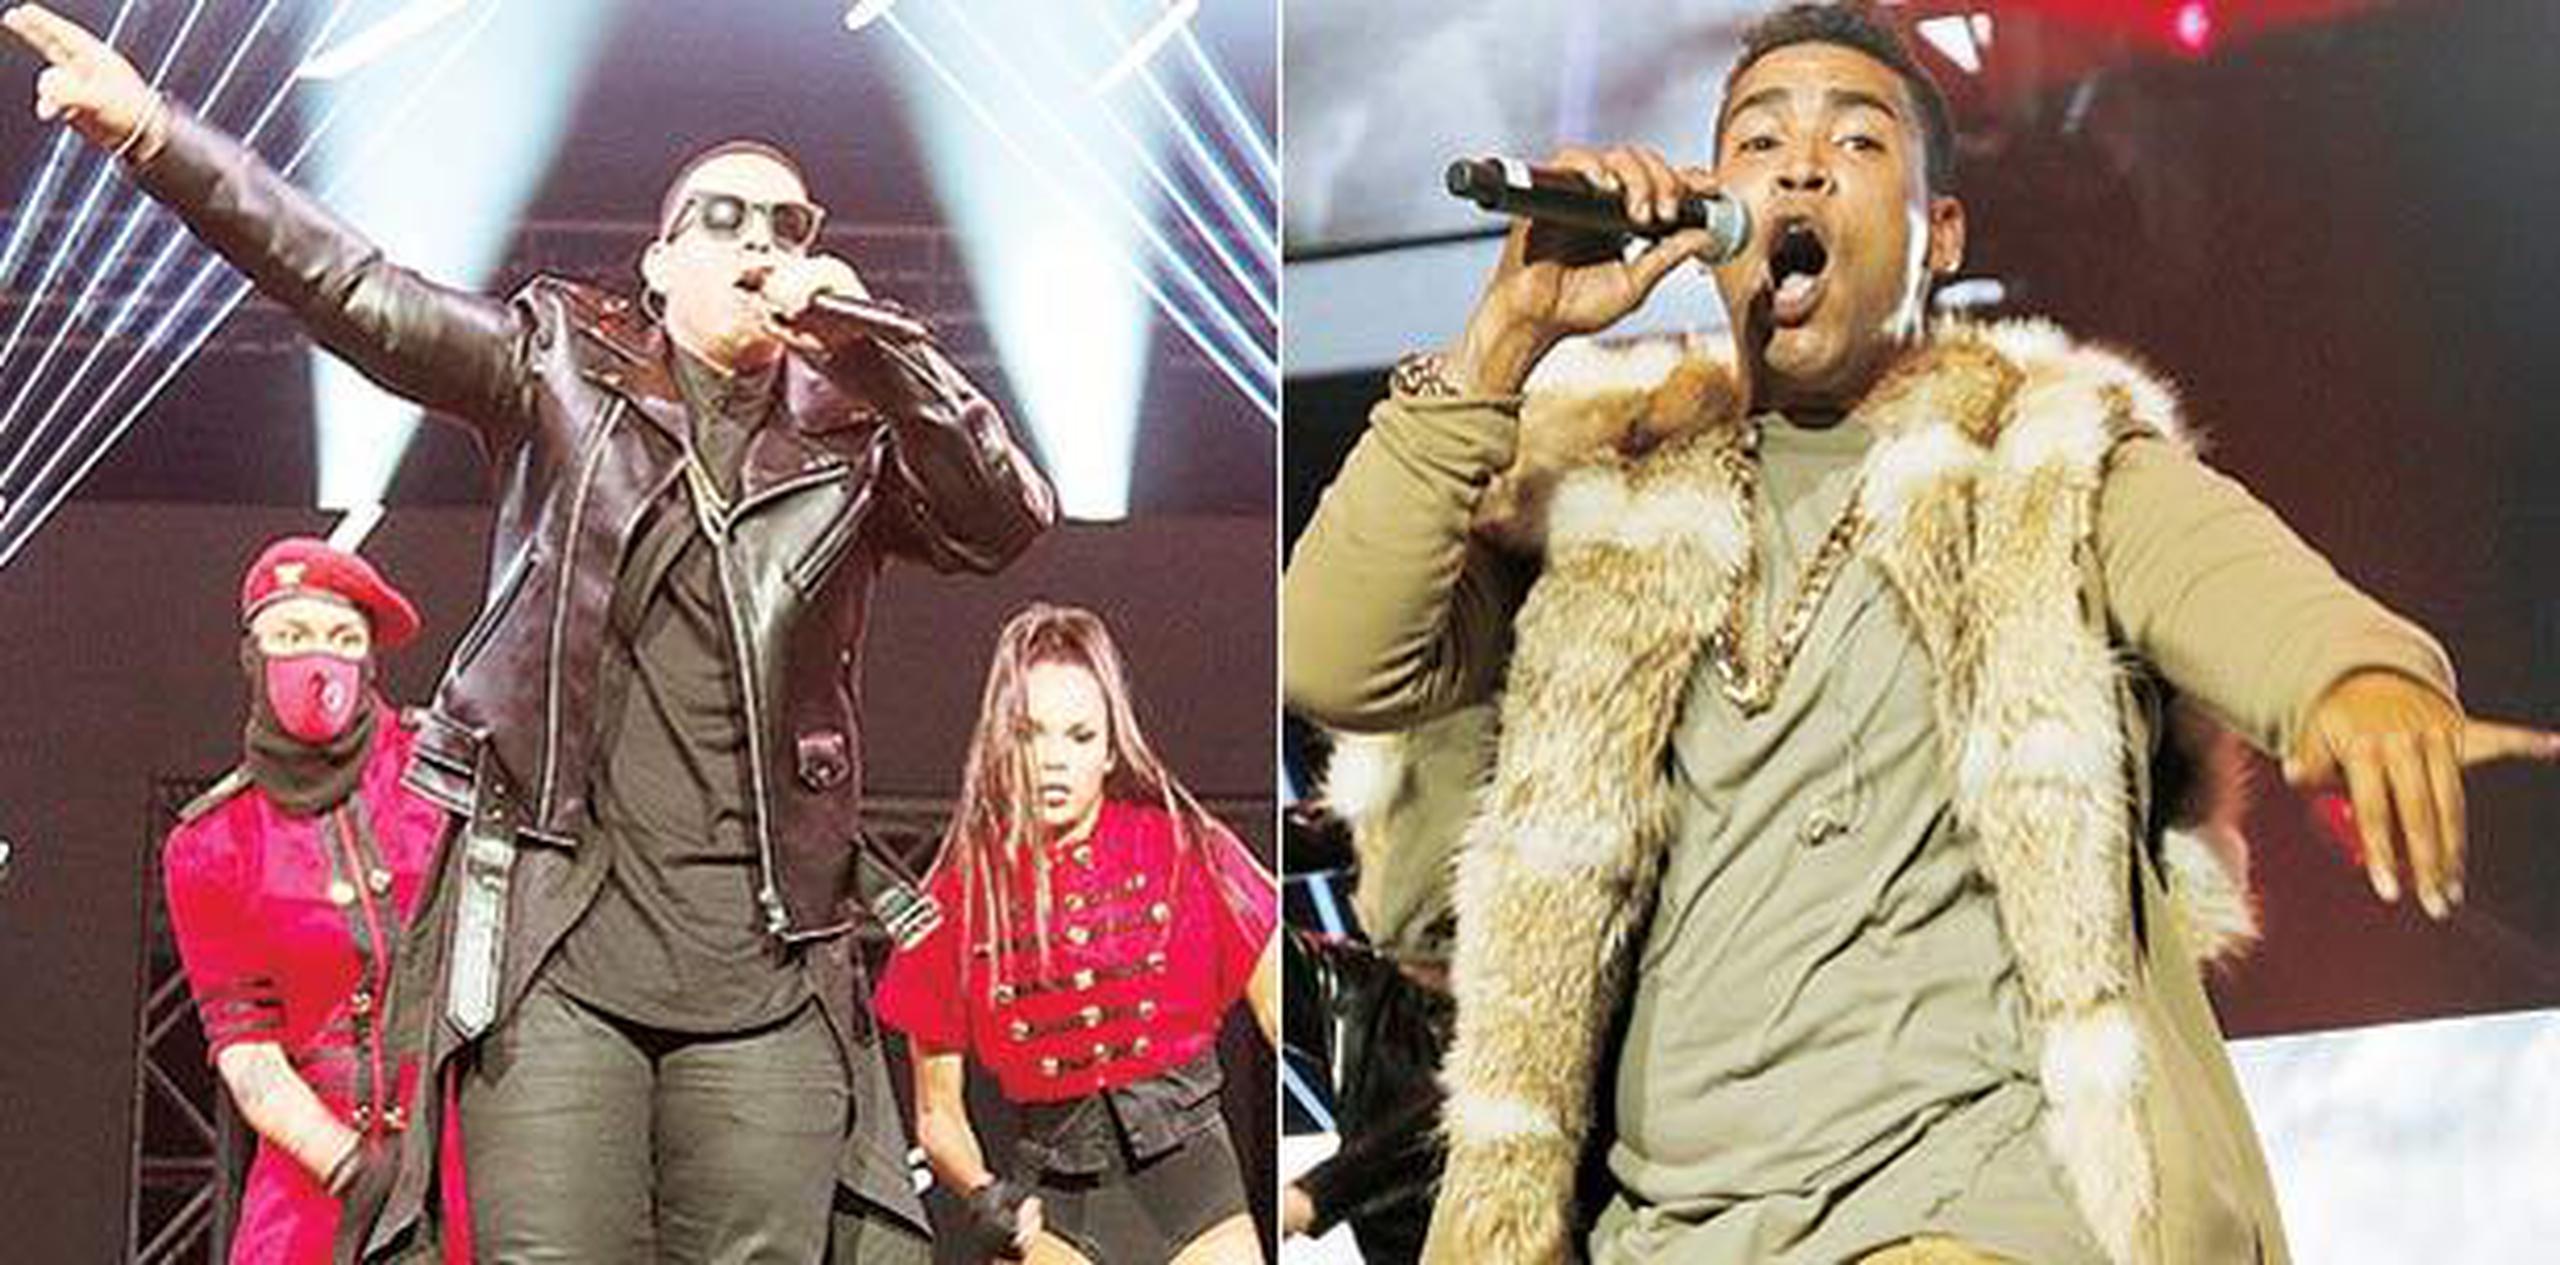 El concierto de Daddy Yankee y Don Omar ha roto récords de asistencia, informó el productor Raphy Pina. (Archivo)